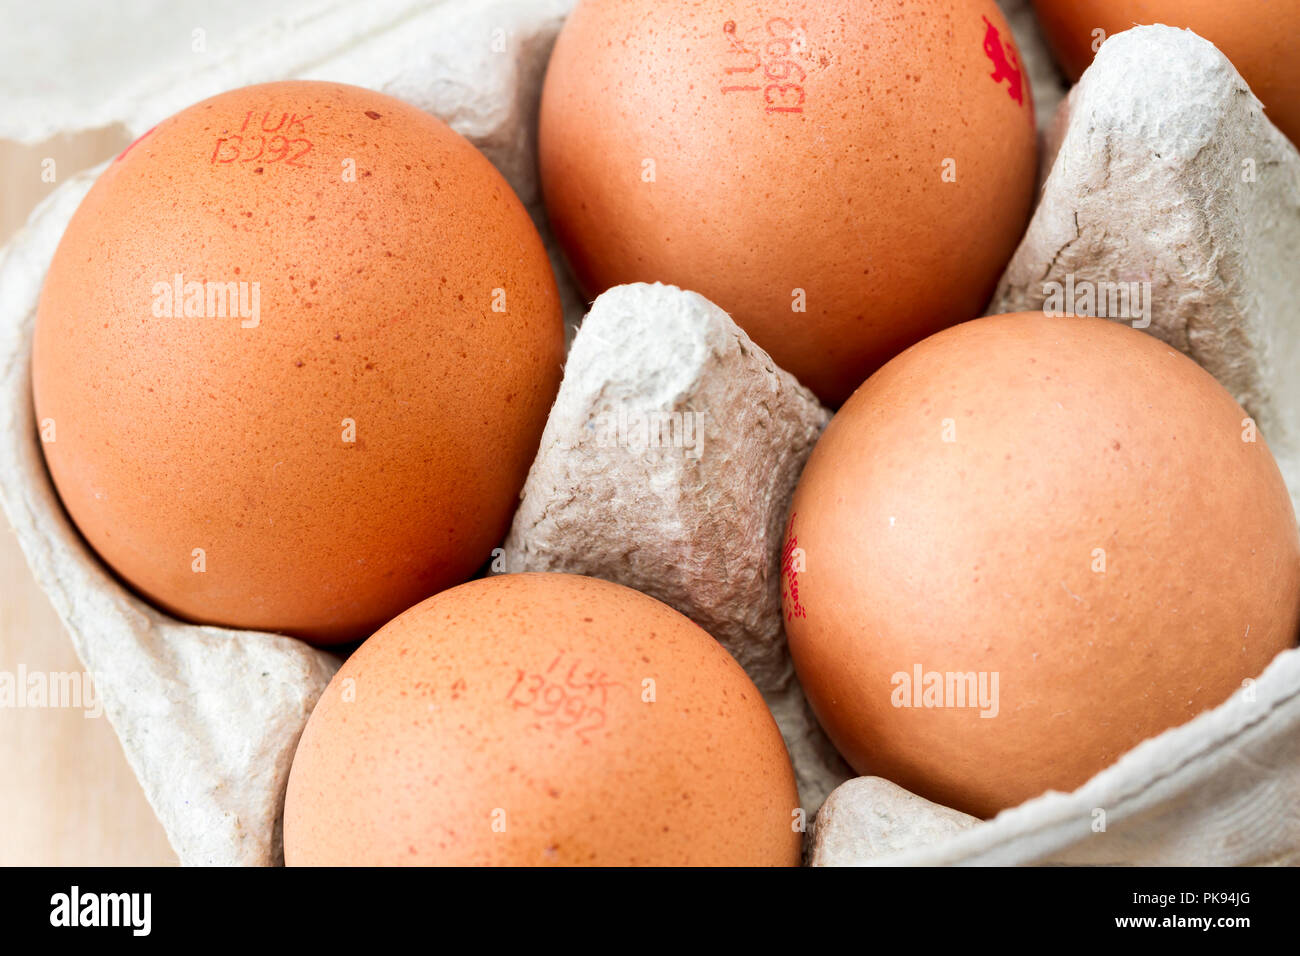 Extra large egg Stock Photo - Alamy